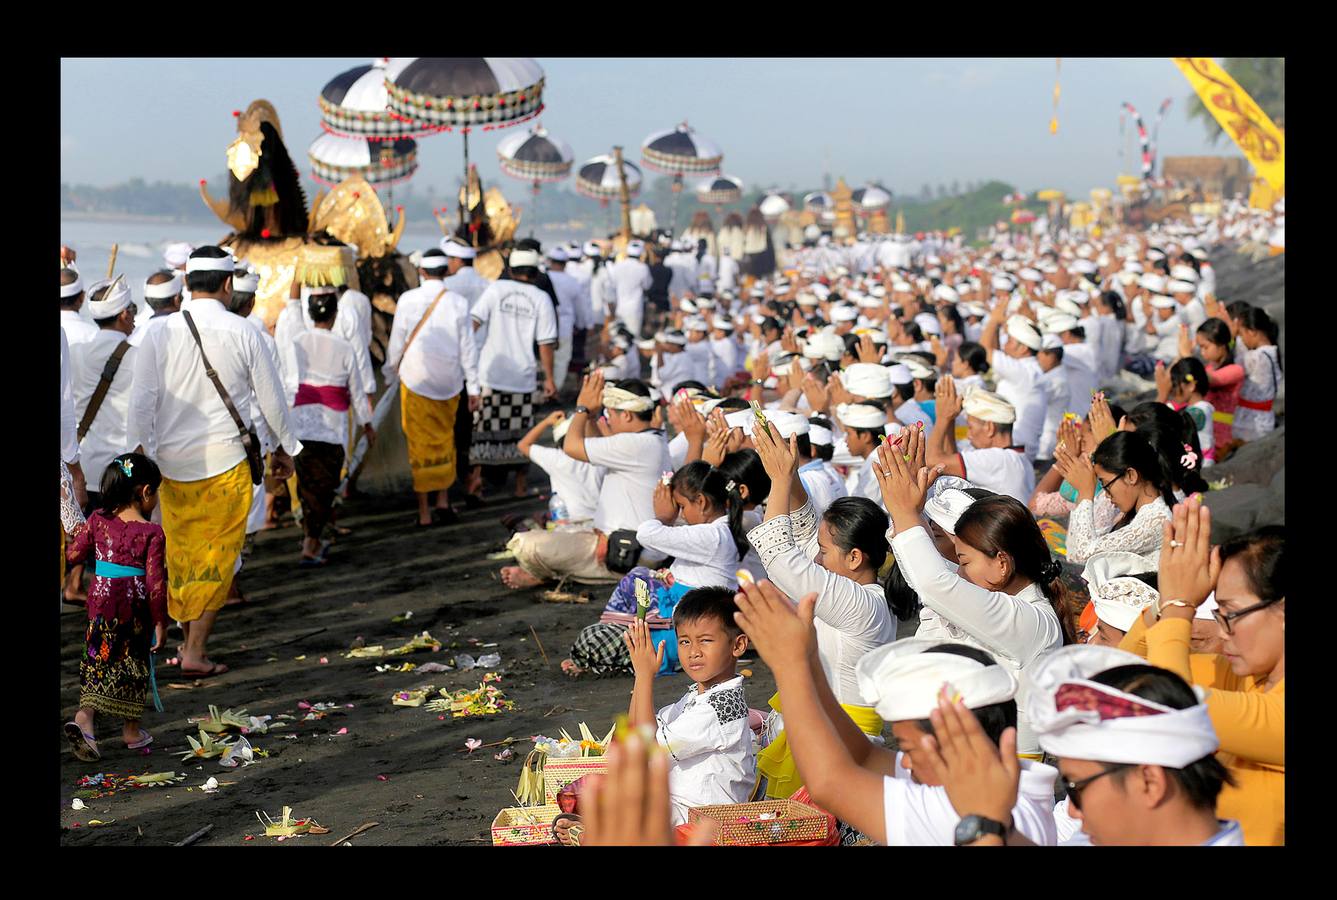 Durante el Nyepi o 'Día del Silencio', los habitantes de la isla indonesia de Bali no deben trabajar, comer, encender la luz ni realizar actividades que les procuren placer. Bali es la única isla que profesa mayoritariamente la religión hindú en Indonesia, un país en el que alrededor del 85 por ciento de los 240 millones de habitantes practican el islam. La celebración que los hinduistas llevan a cabo en esta isla durante el 'Nyepi' se traslada también a los turistas, a quienes se pide que permanezcan en sus hoteles y no acudan a las playas, restaurantes o comercios durante la jornada. Las fotografías muestran la celebración del Melasti, un ritual de purificación que se celebra en Bali, pocos días antes del Nyepi.